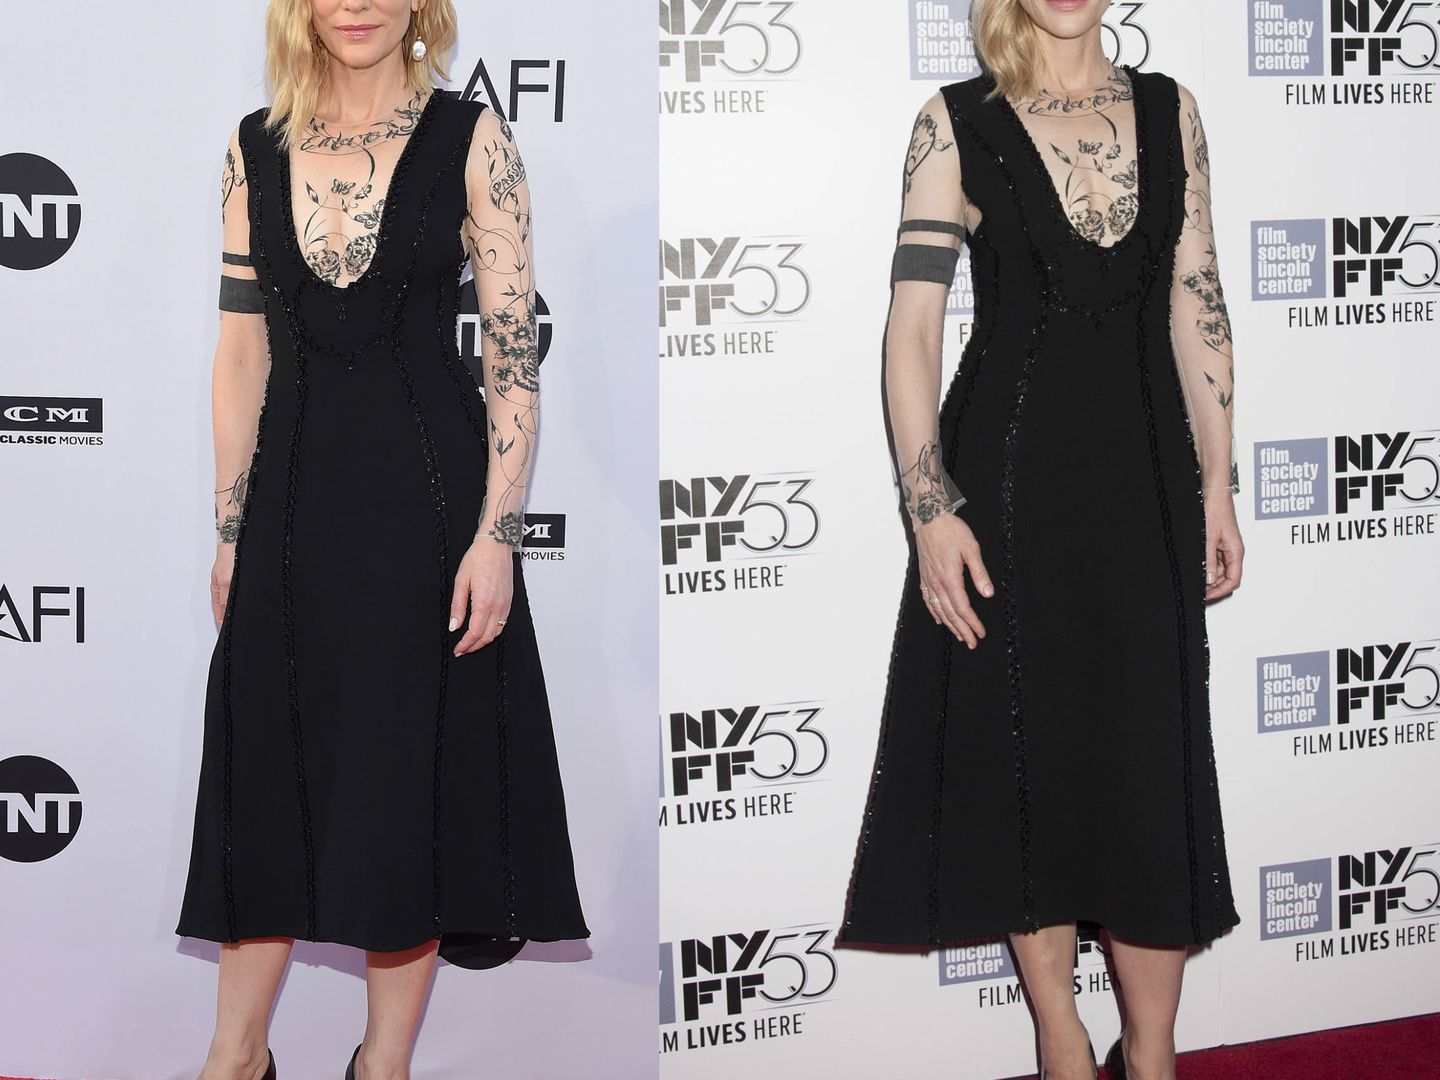 Cate Blanchett en 2018 y Cate Blanchett en 2015. (Gtresonline)